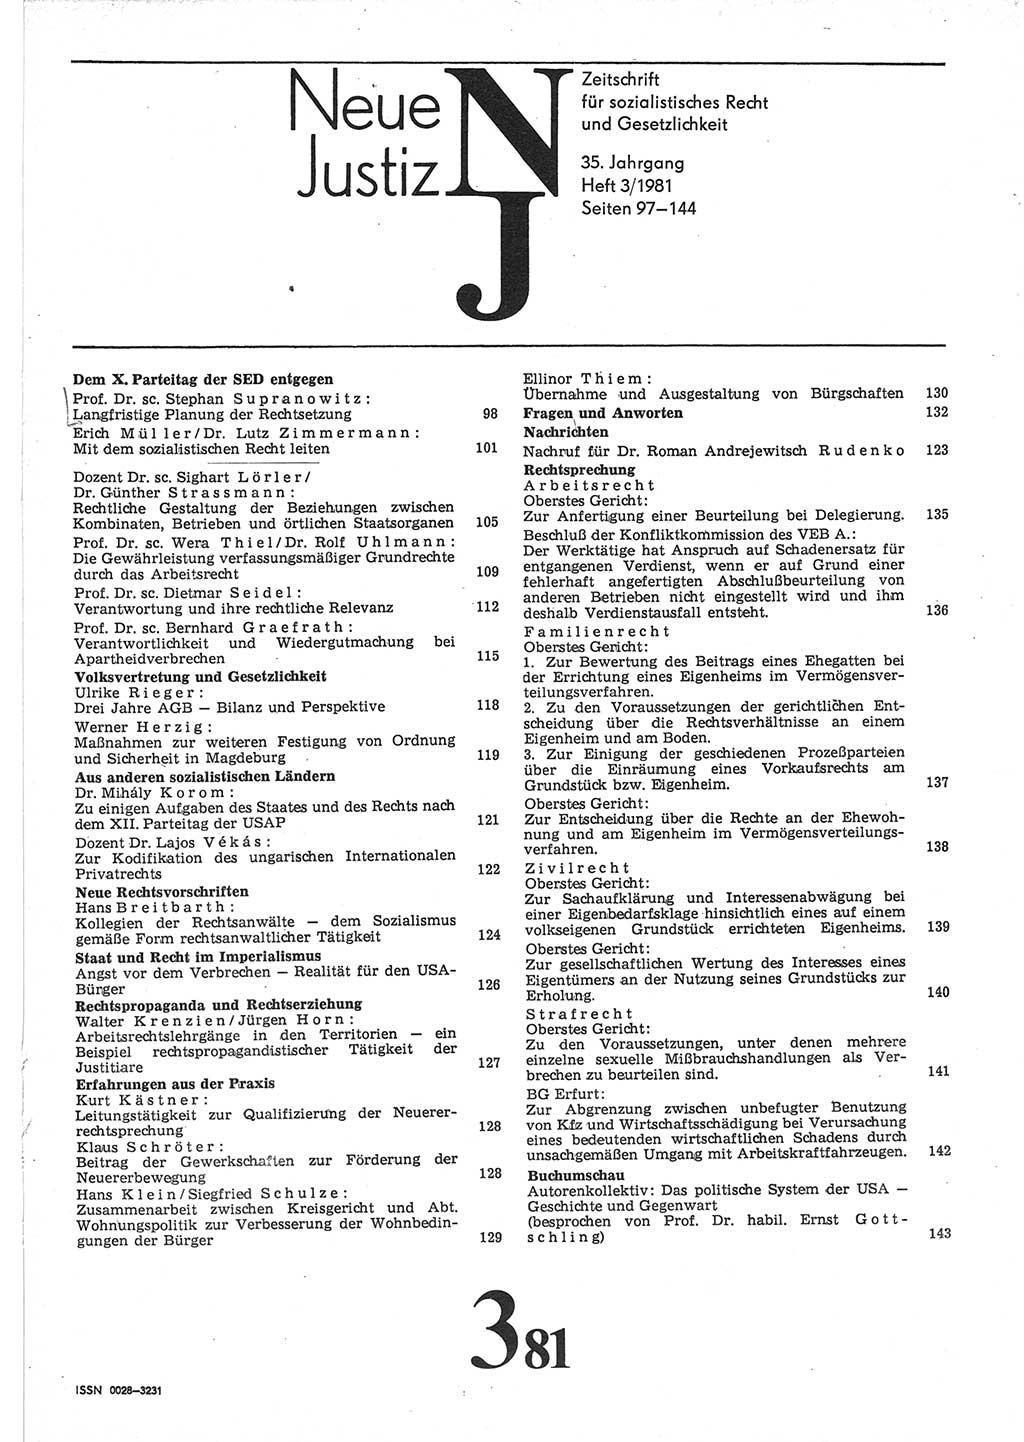 Neue Justiz (NJ), Zeitschrift für sozialistisches Recht und Gesetzlichkeit [Deutsche Demokratische Republik (DDR)], 35. Jahrgang 1981, Seite 97 (NJ DDR 1981, S. 97)